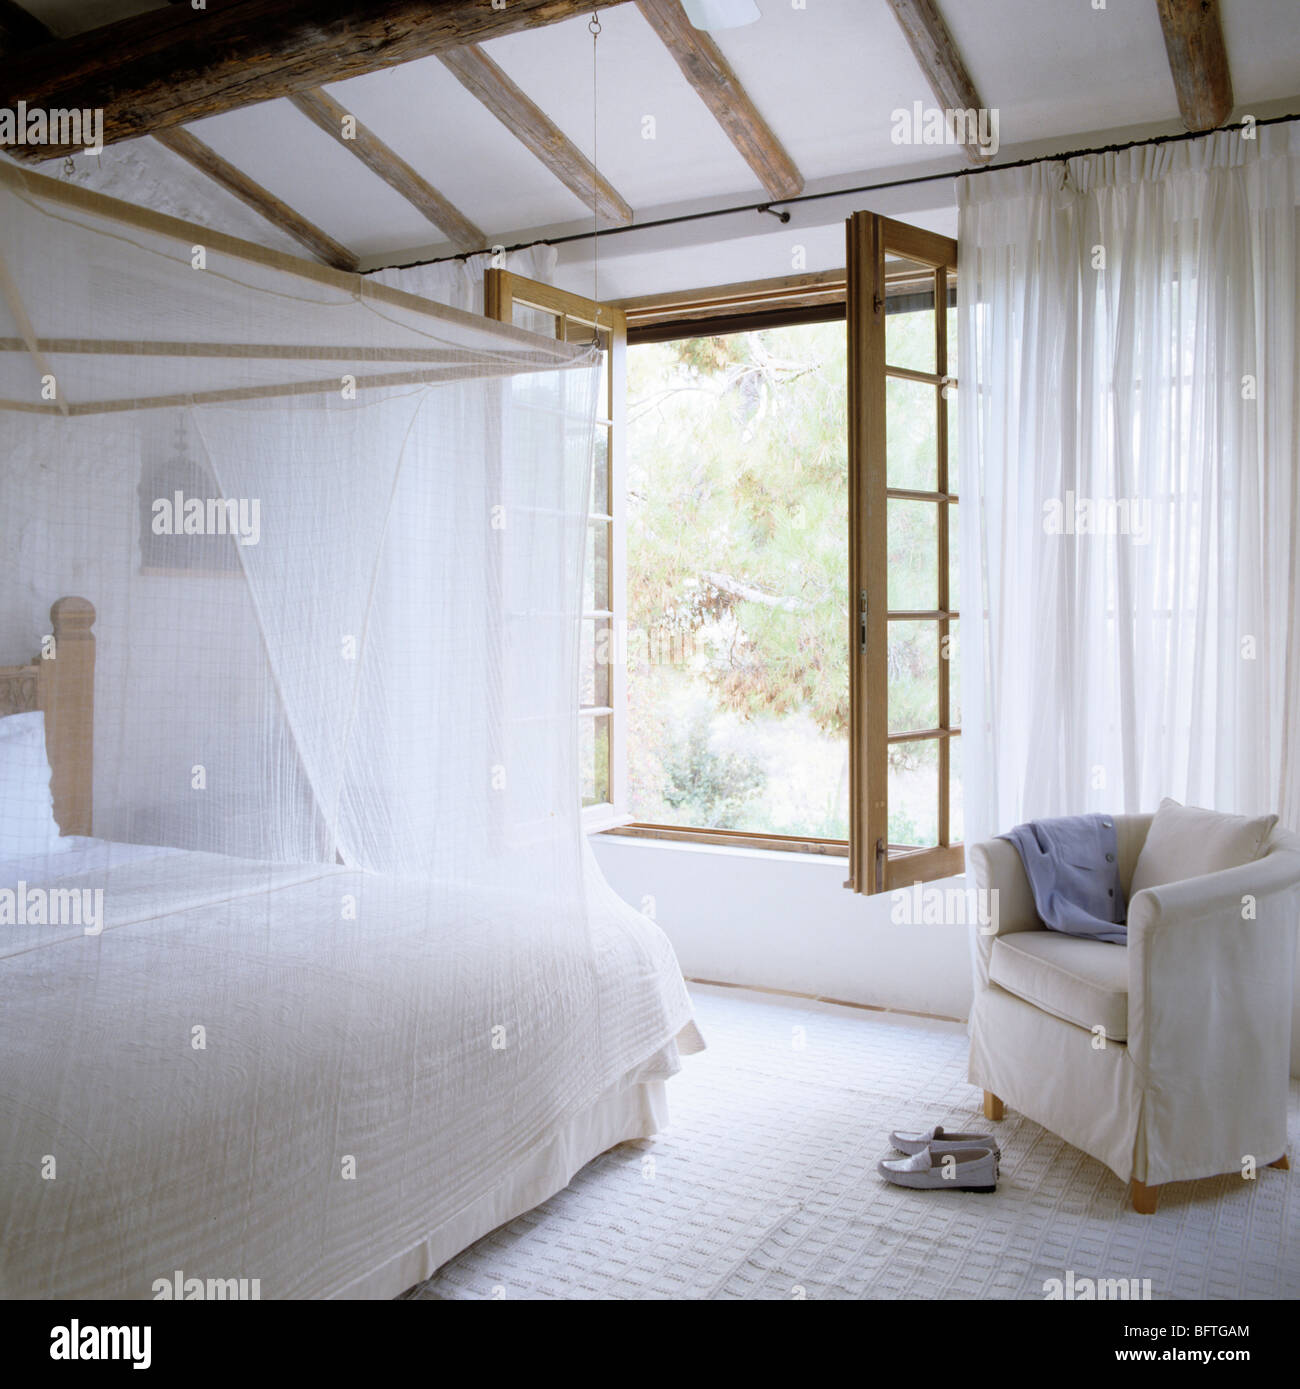 Schlafzimmer mit Fenster, weiße Vorhänge und Musselin Bettdecke Stockfoto